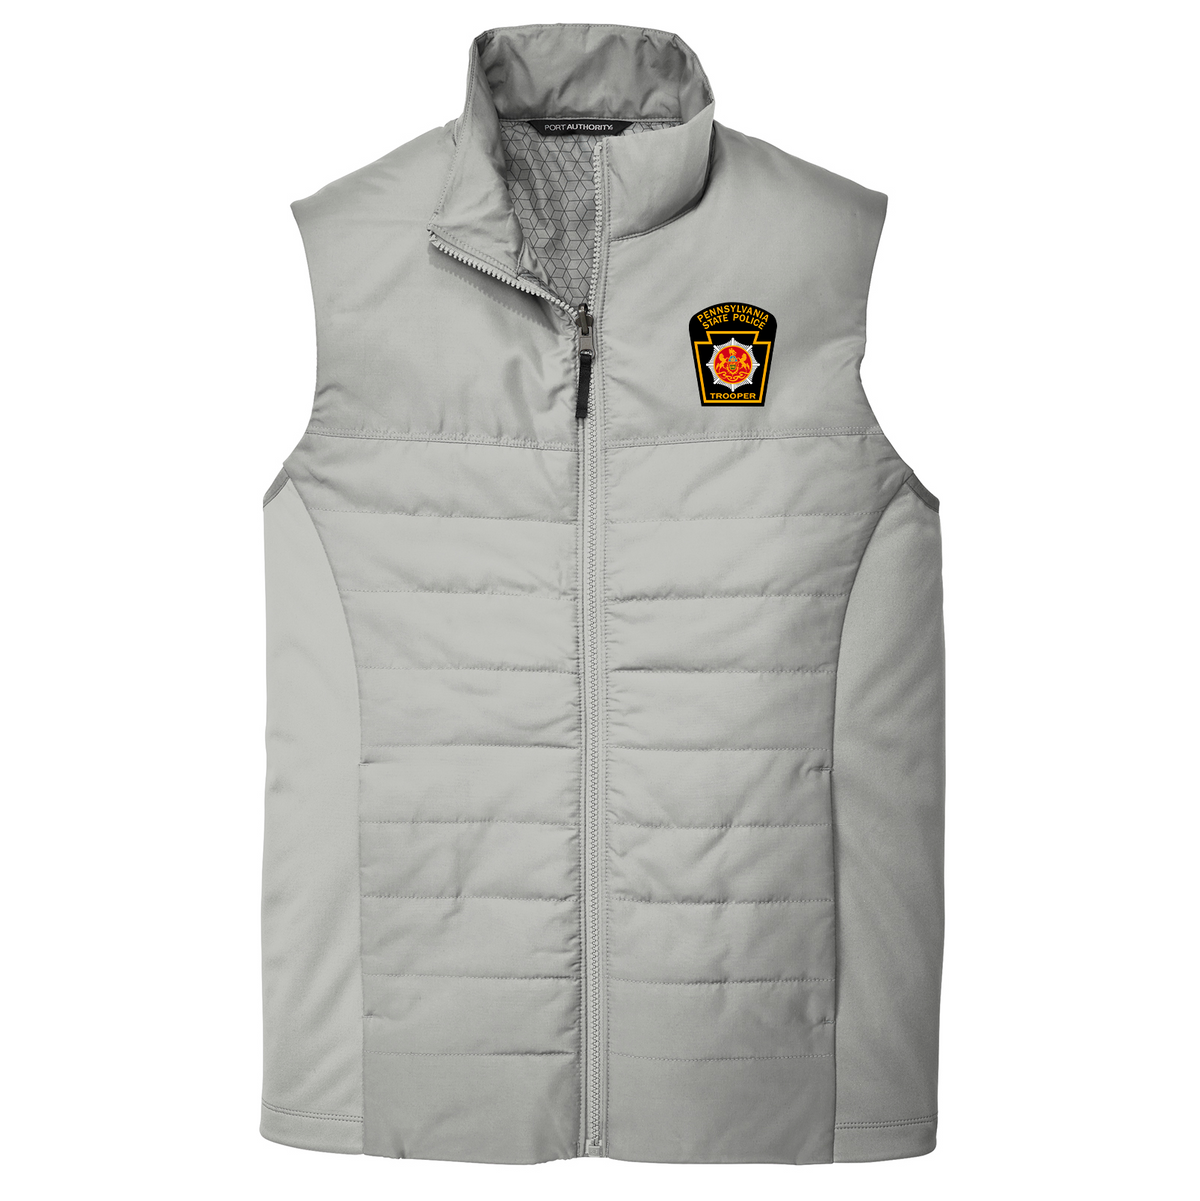 PA State Police Vest